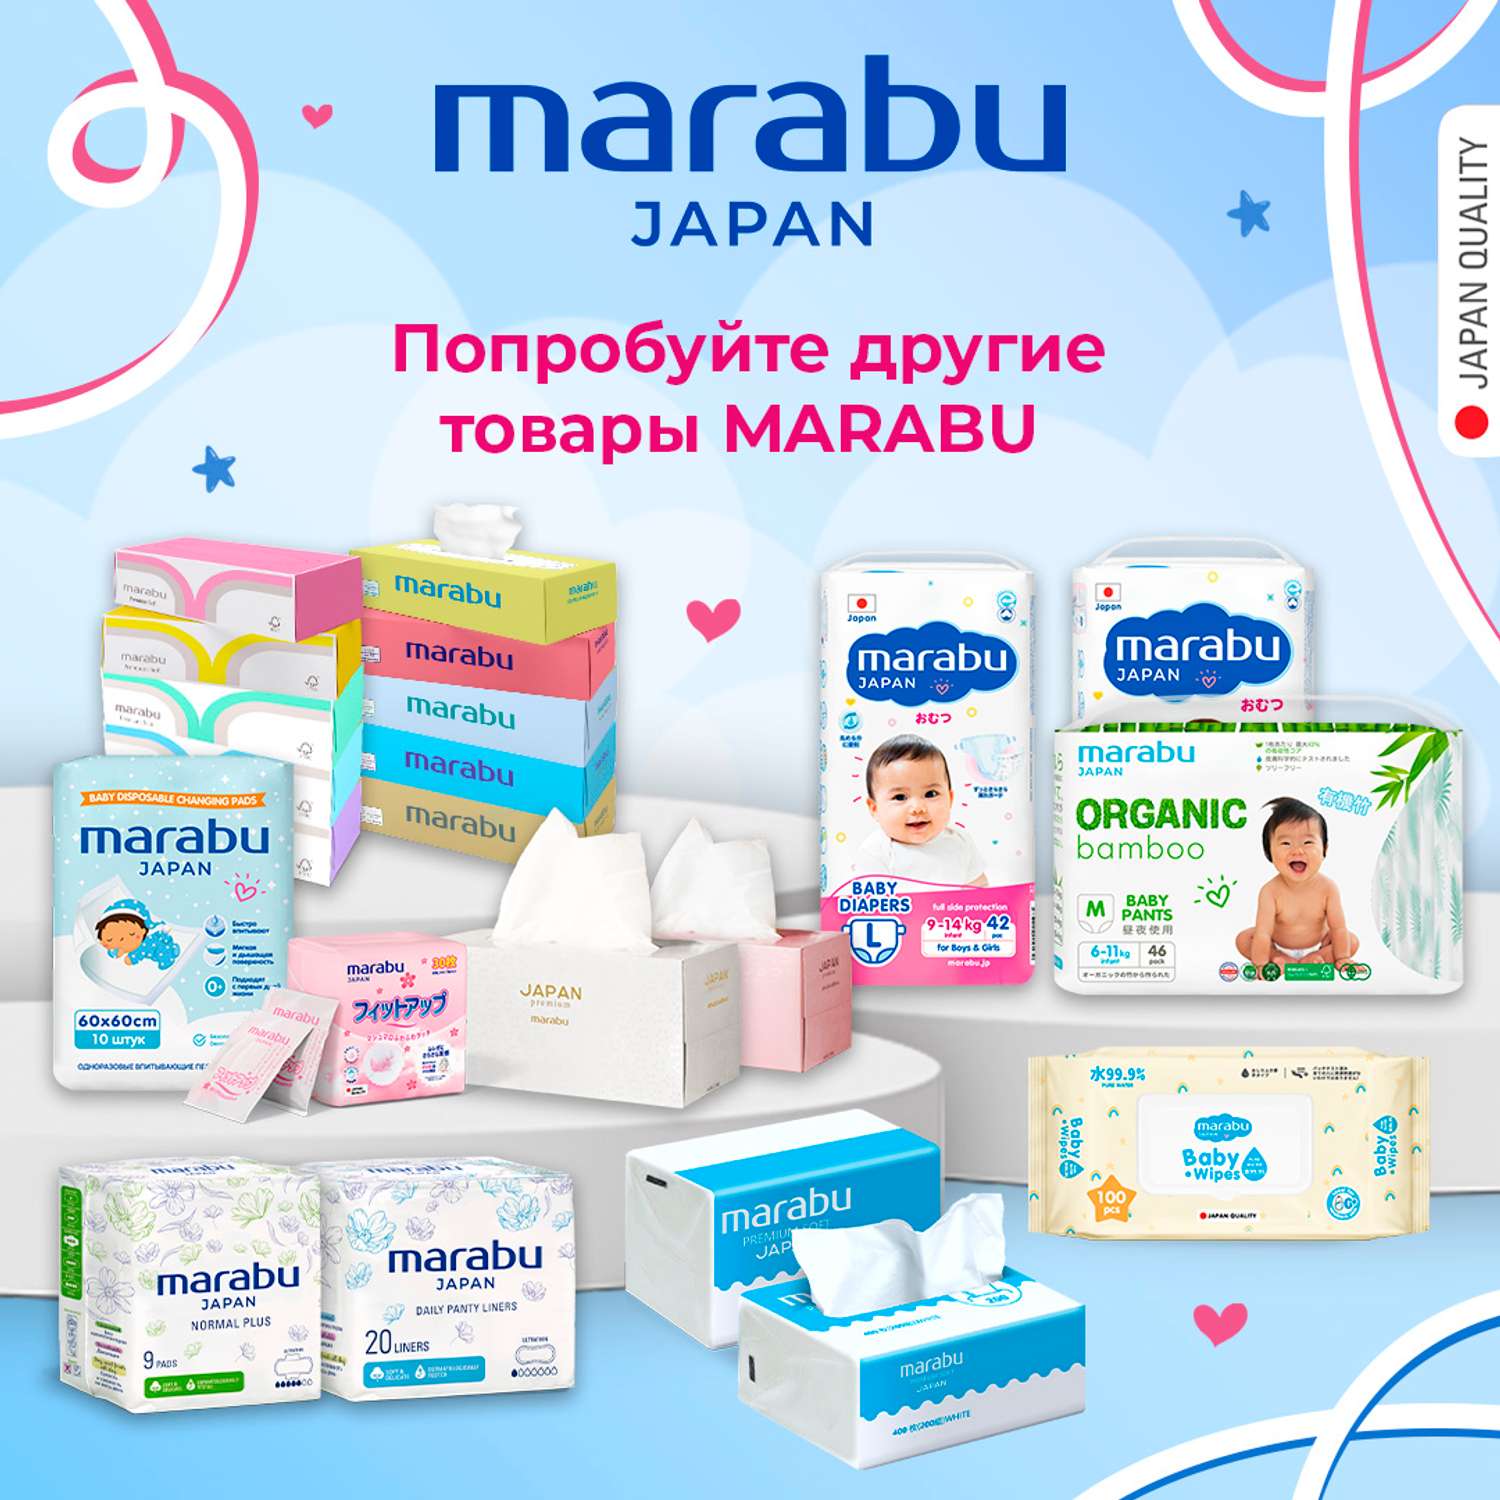 Влажные салфетки для детей MARABU 600 шт набор из 6 упаковок по 100 шт - фото 7